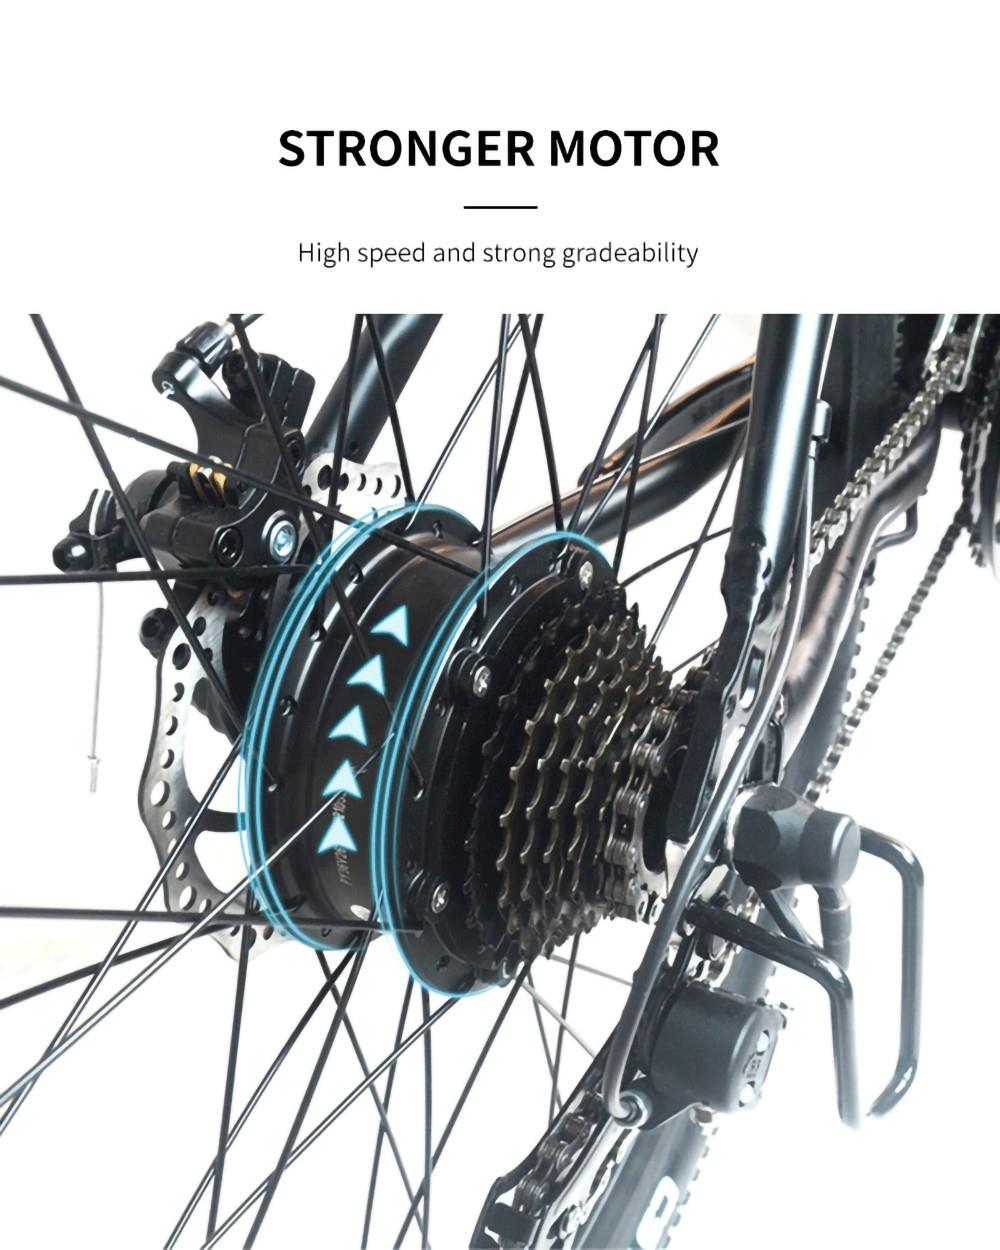 K3 elektromos kerékpár, 26 * 1.95 hüvelykes gumiabroncs 350 W motor 36 V 10.4 Ah akkumulátor 32 km/h Max sebesség 120 kg Terhelhető tárcsafék - kék